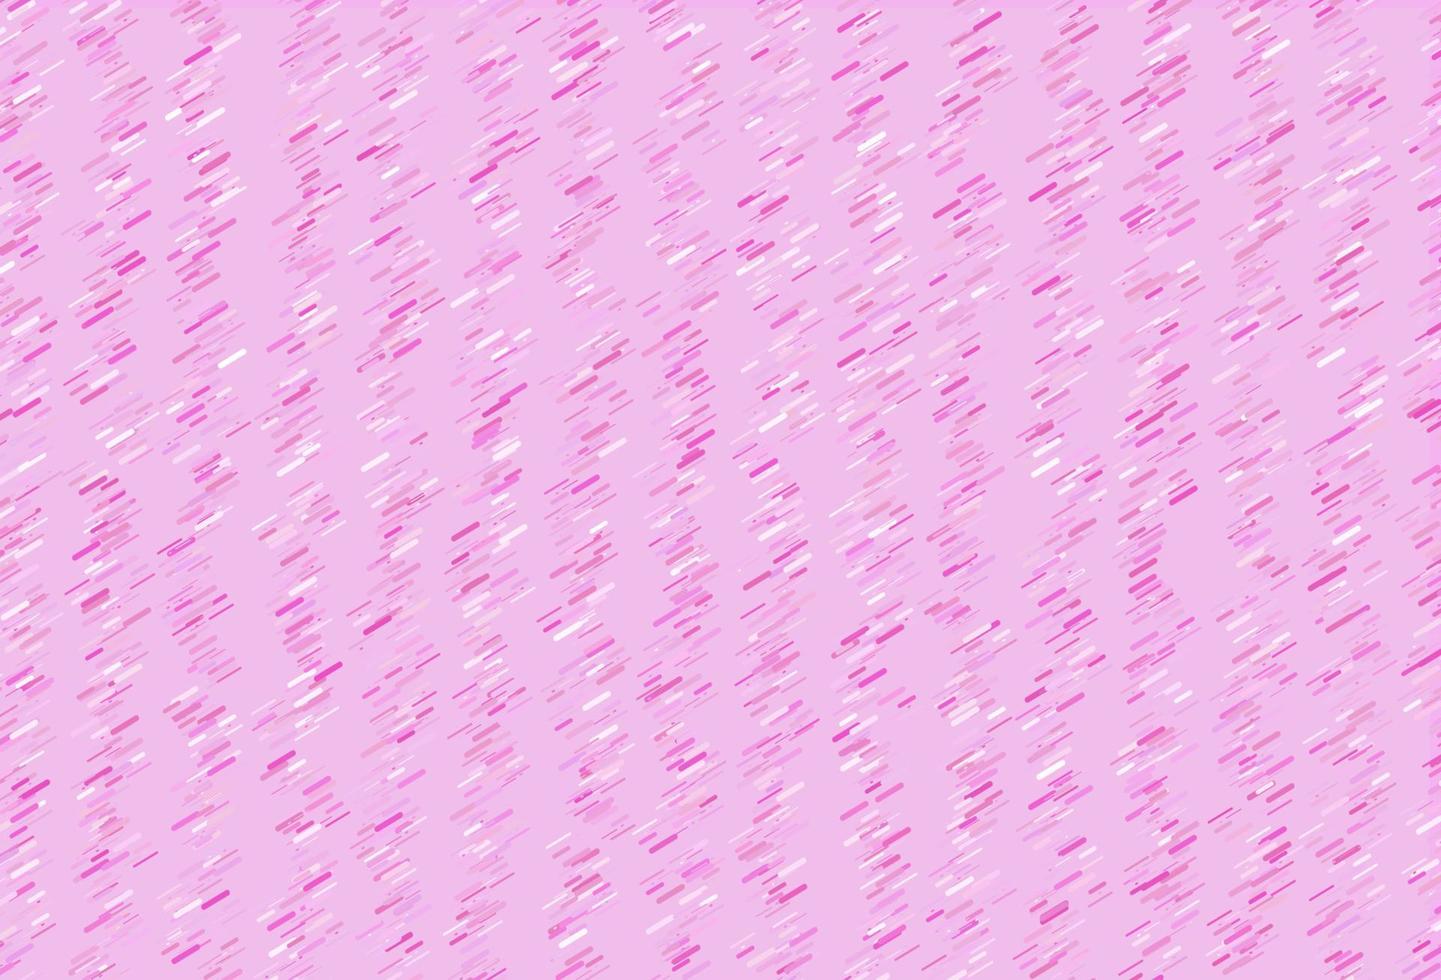 sfondo vettoriale rosa chiaro con linee rette.